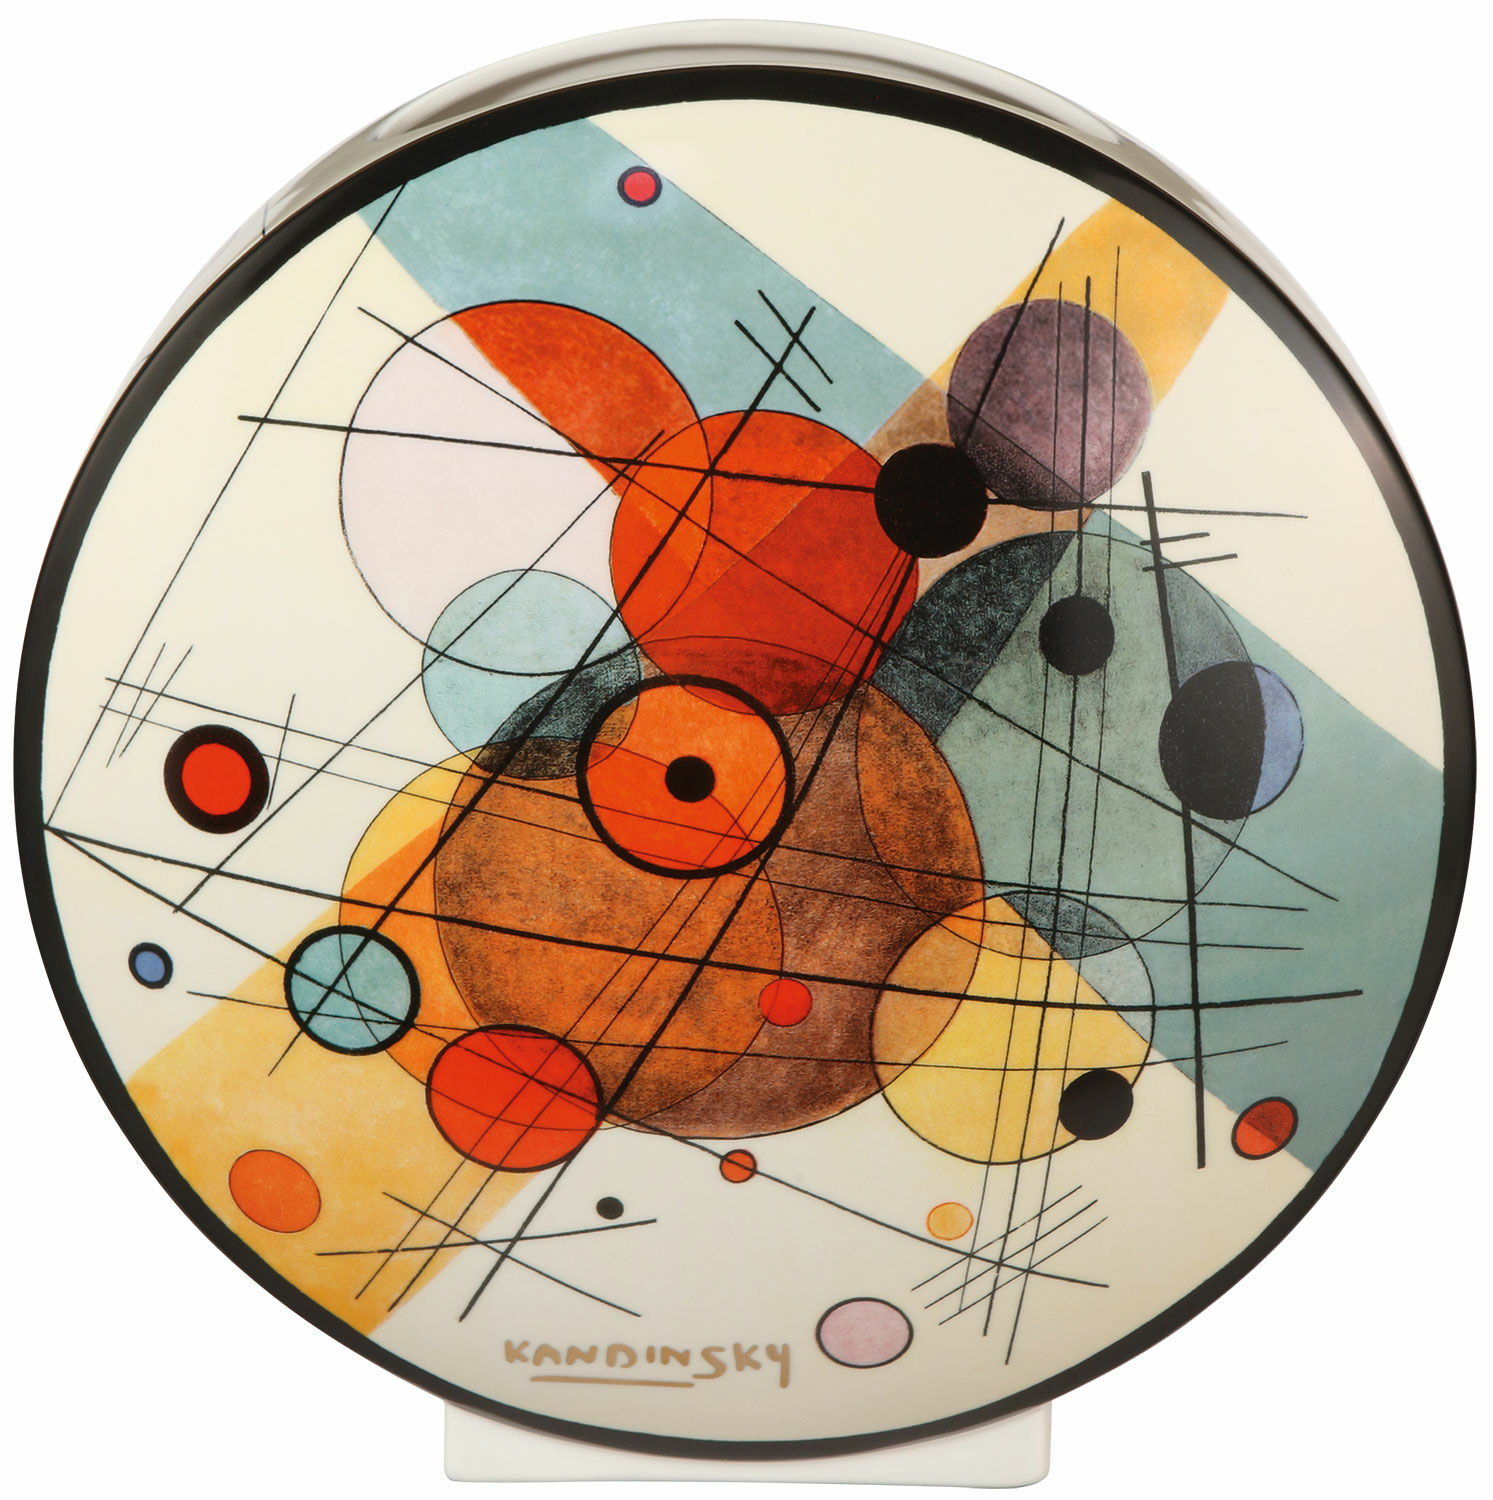 Porzellanvase "Kreise in einem Kreis" - nach Wassily Kandinsky